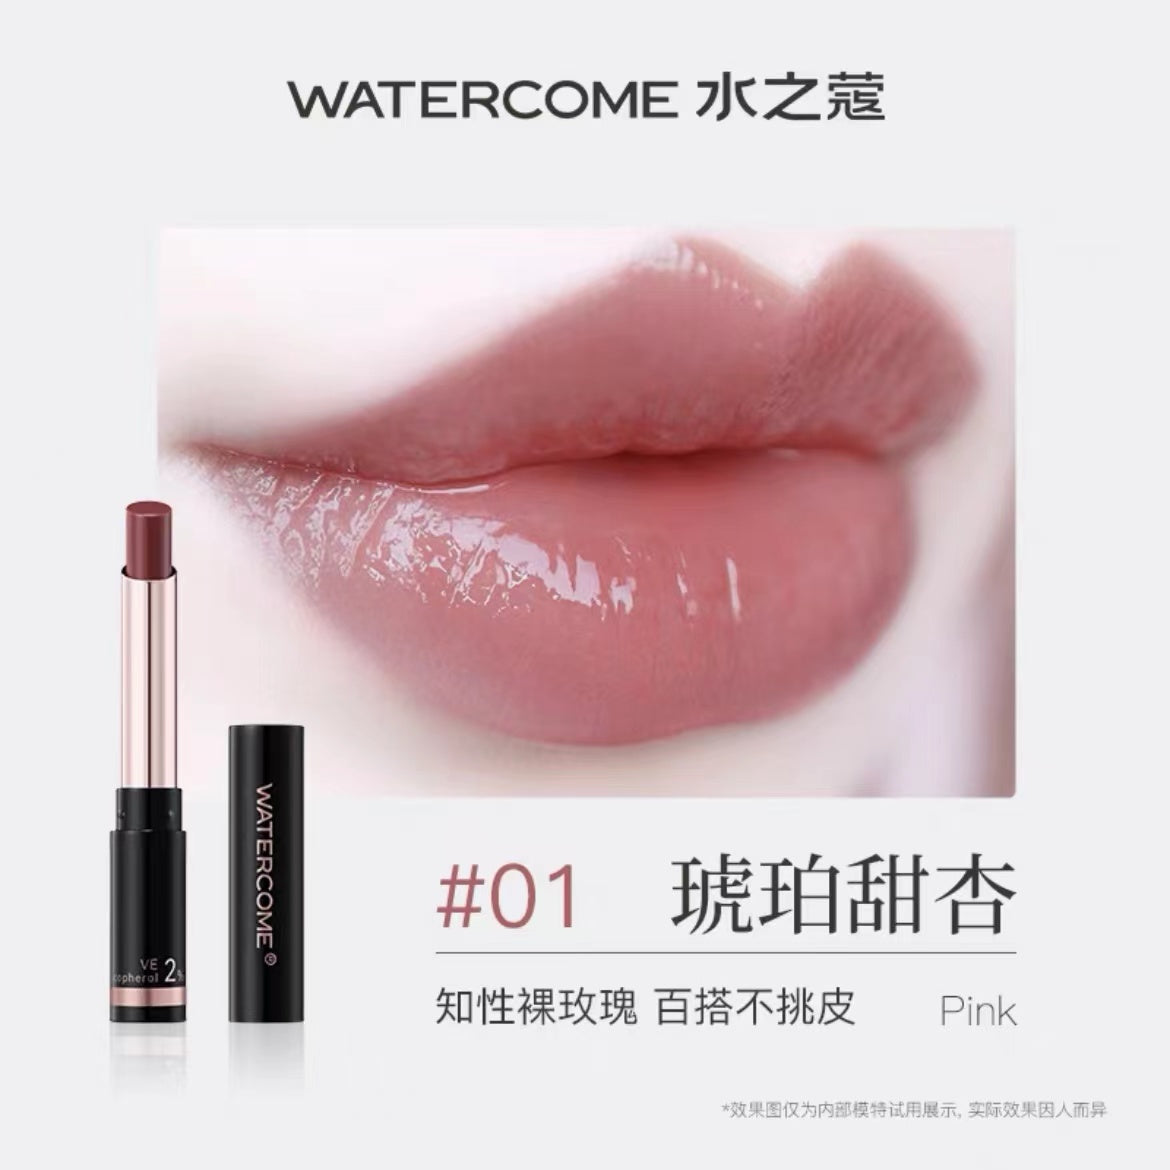 Watercome Colored Lip Balm 1.8g 水之蔻有色润唇膏